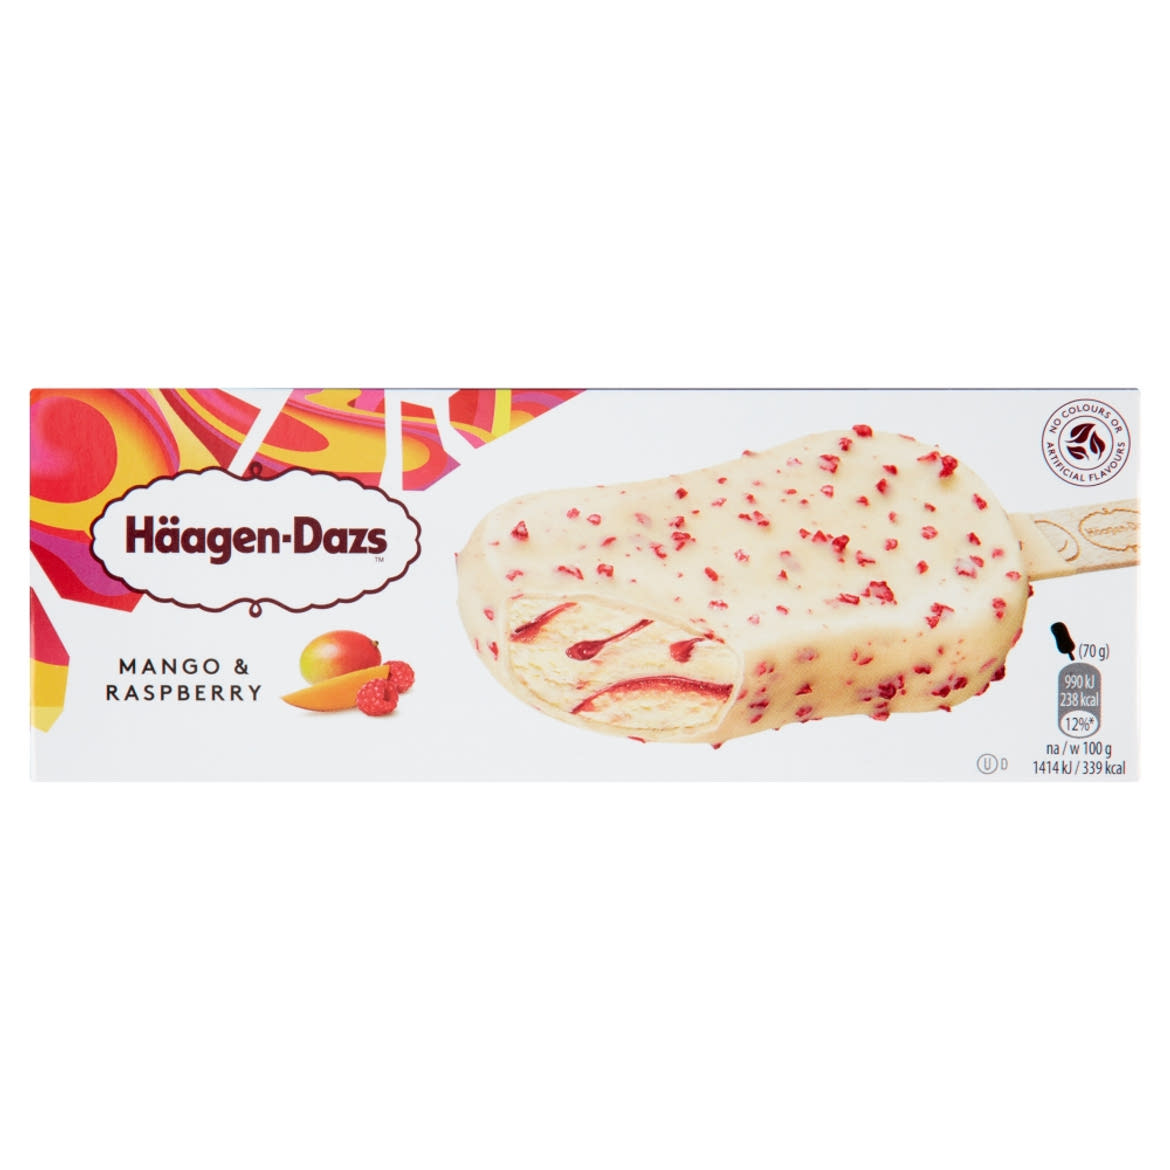 Häagen-Dazs mangós jégkrém málna öntettel belga fehér csokoládé bevonattal és málnadarabokkal 80 ml